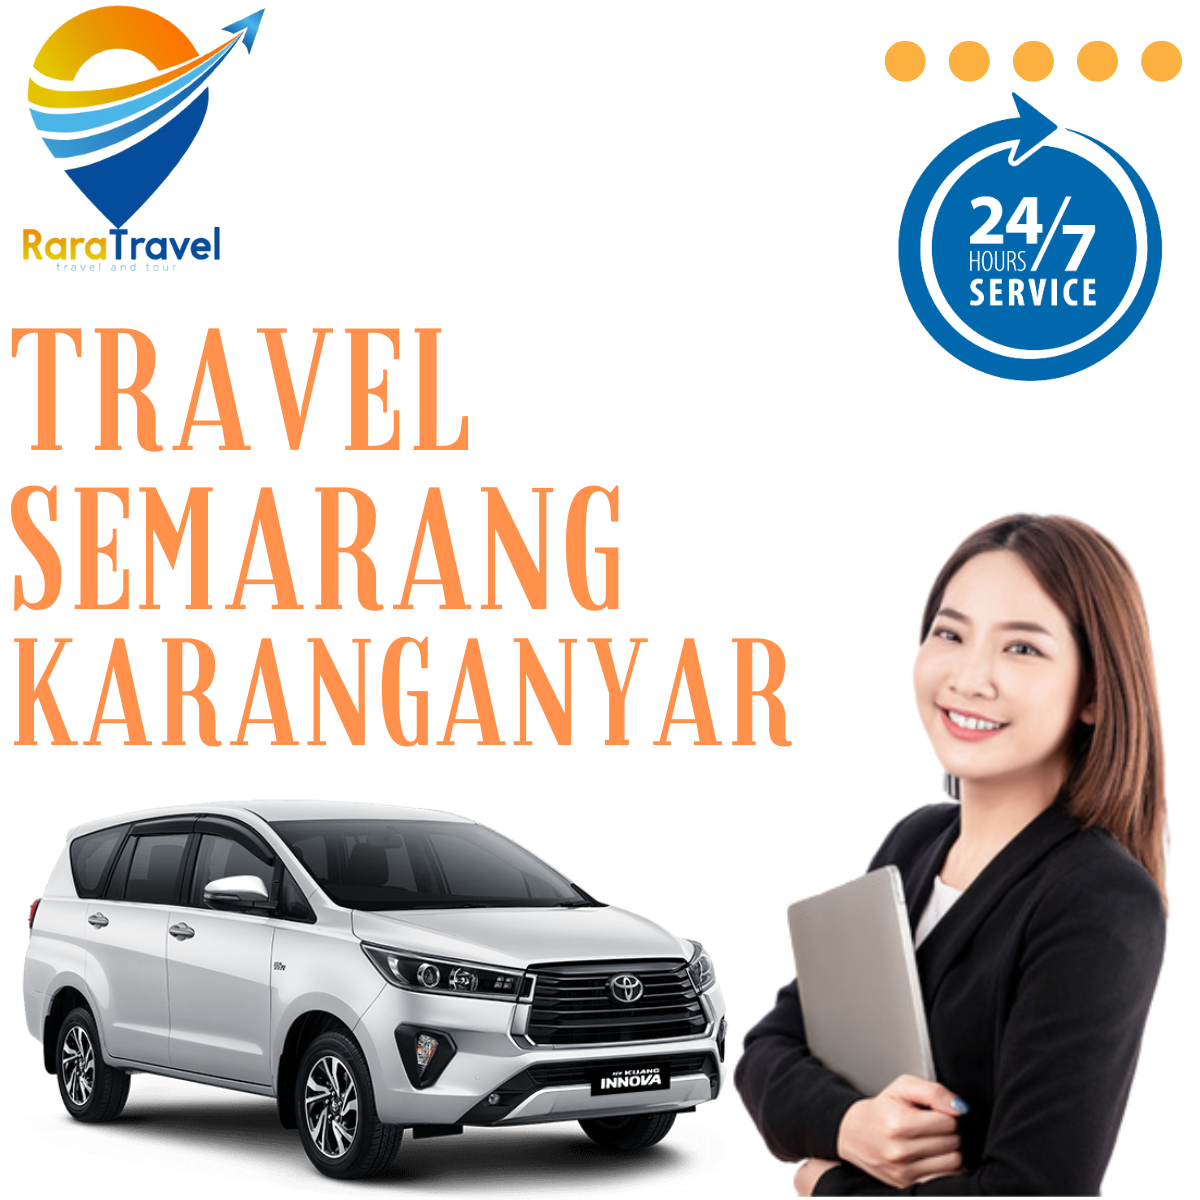 Travel Semarang KarangAnyar Murah PP Hiace - RARATRAVEL.ID